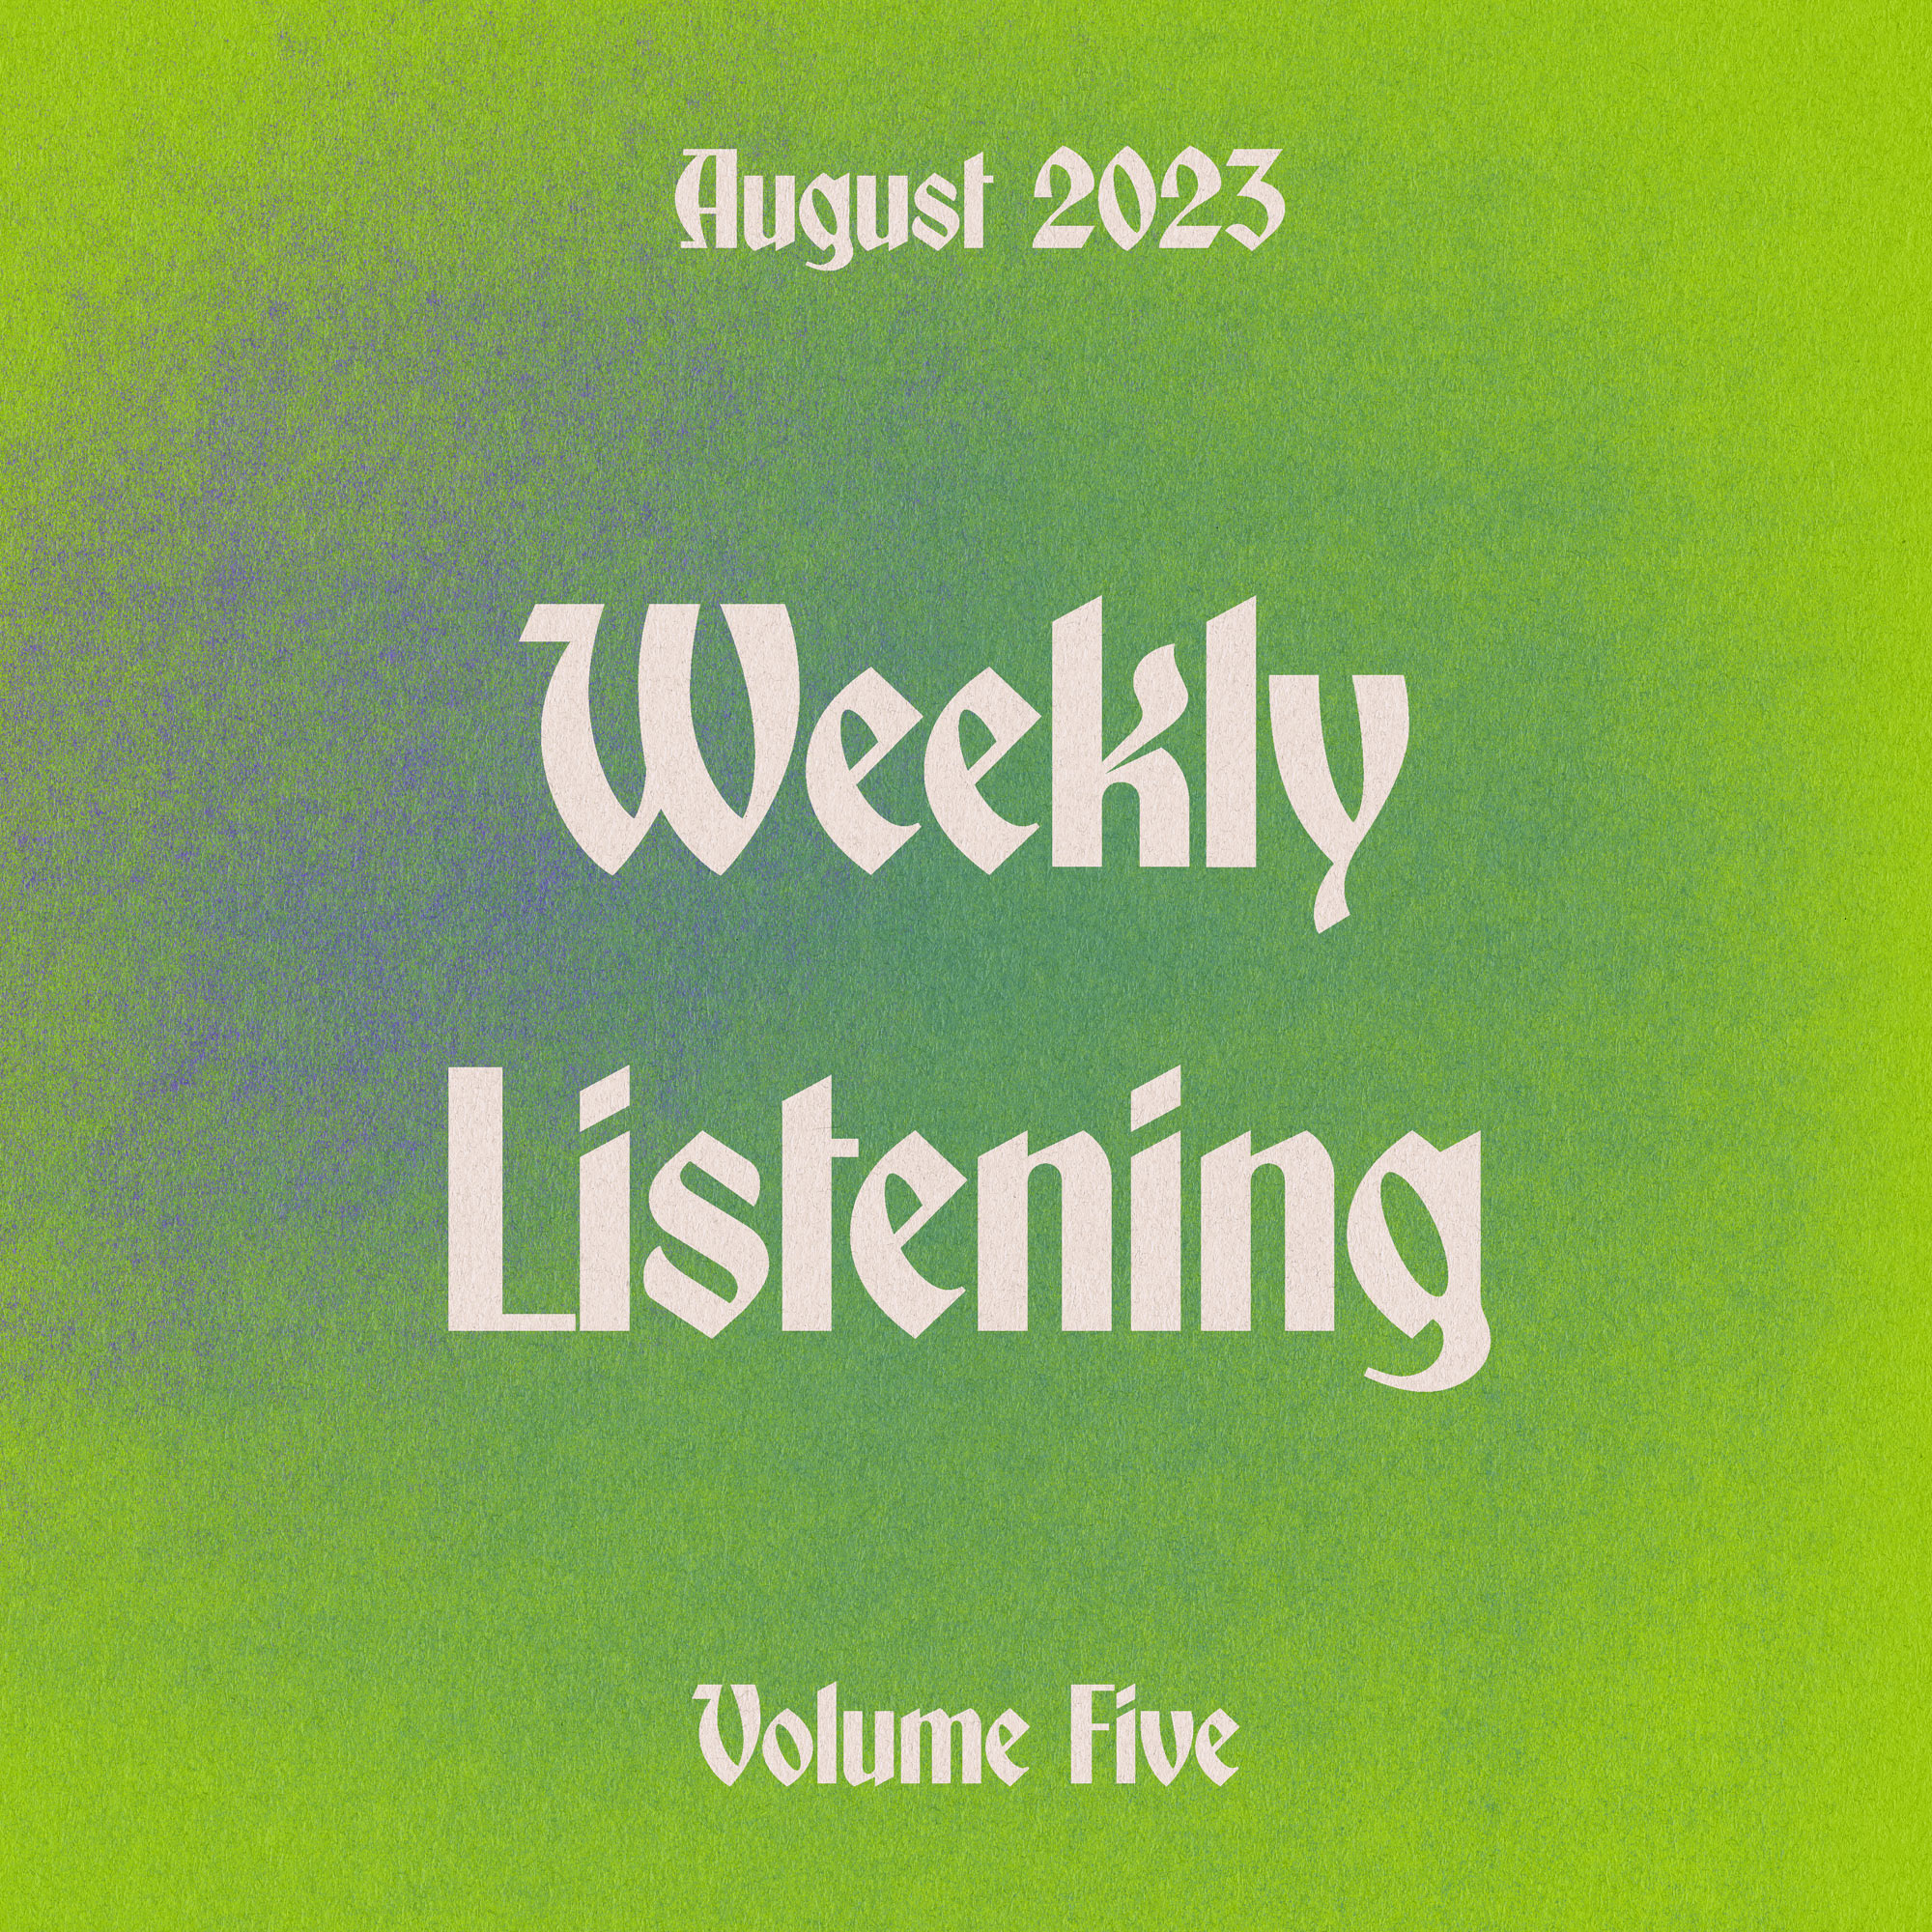 Weekly Listening August 2023 volume 5